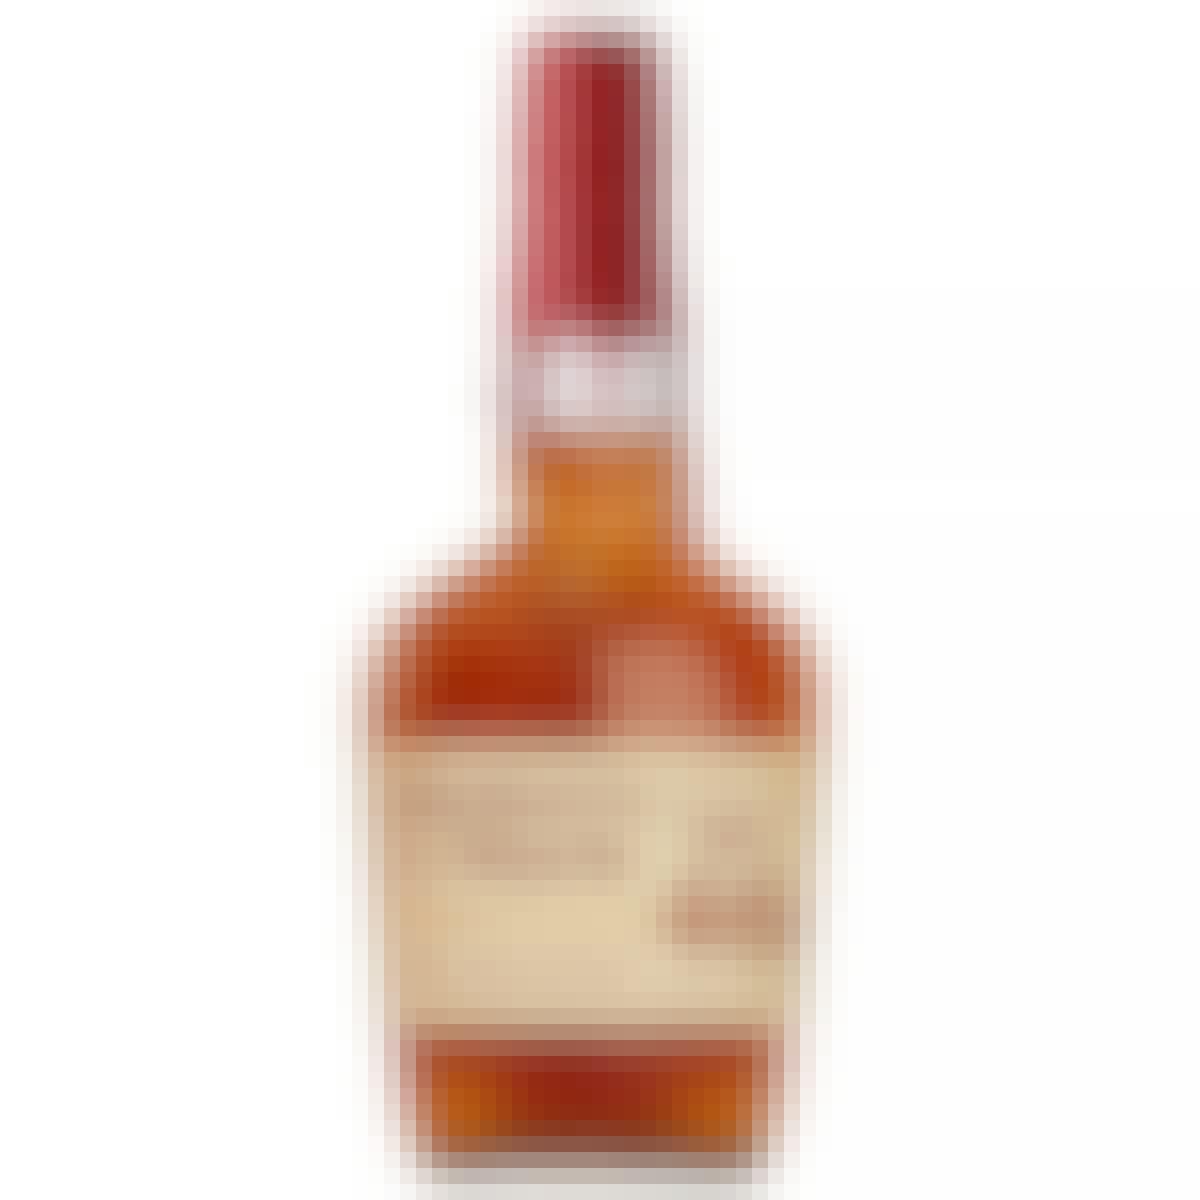 Maker's Mark Maker's 46 Bourbon Whisky 750ml